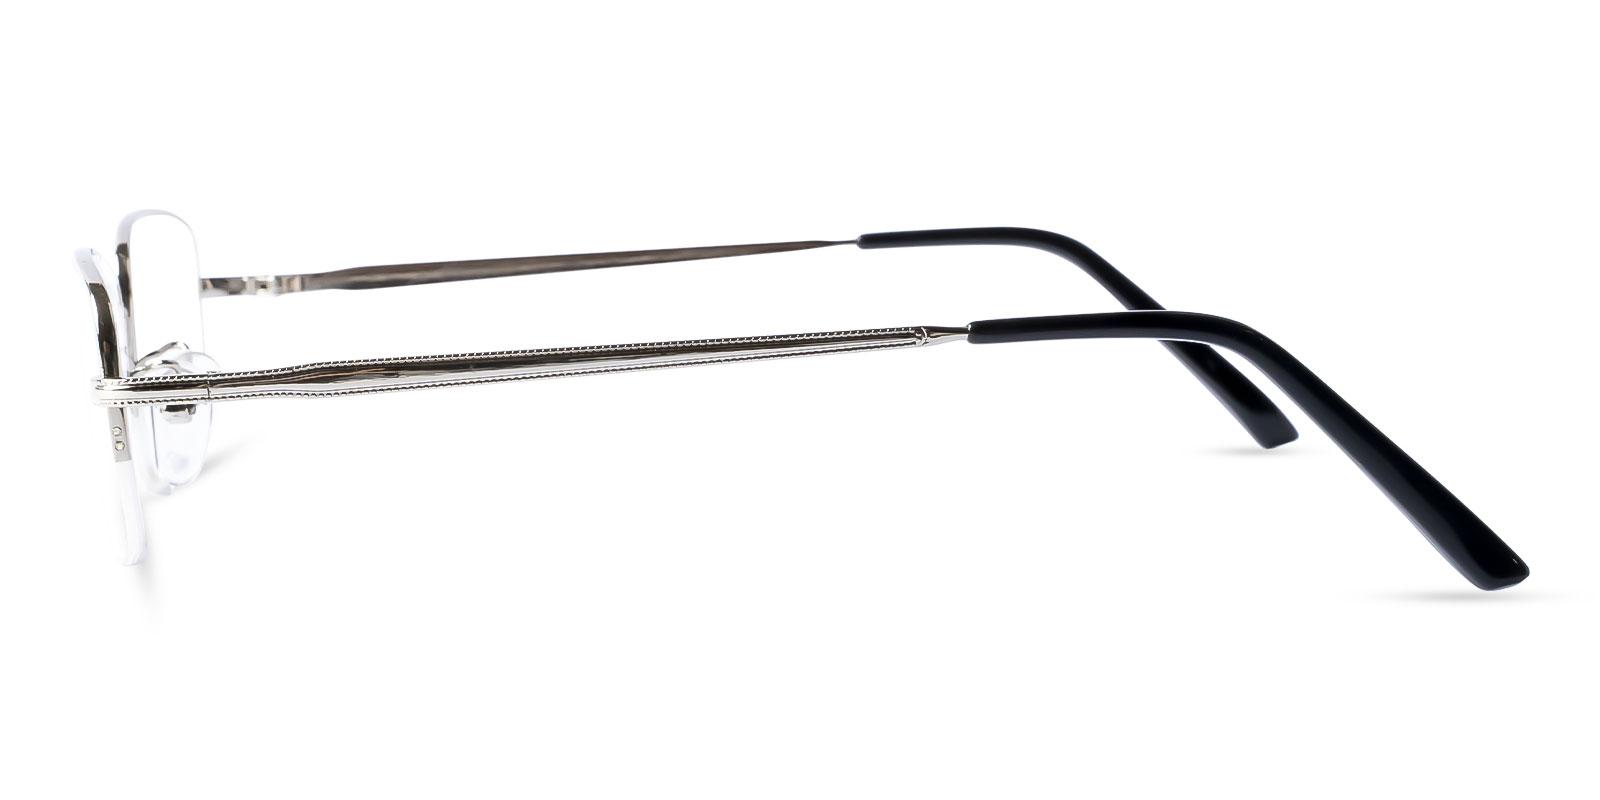 Gabon Silver Metal Eyeglasses , NosePads Frames from ABBE Glasses